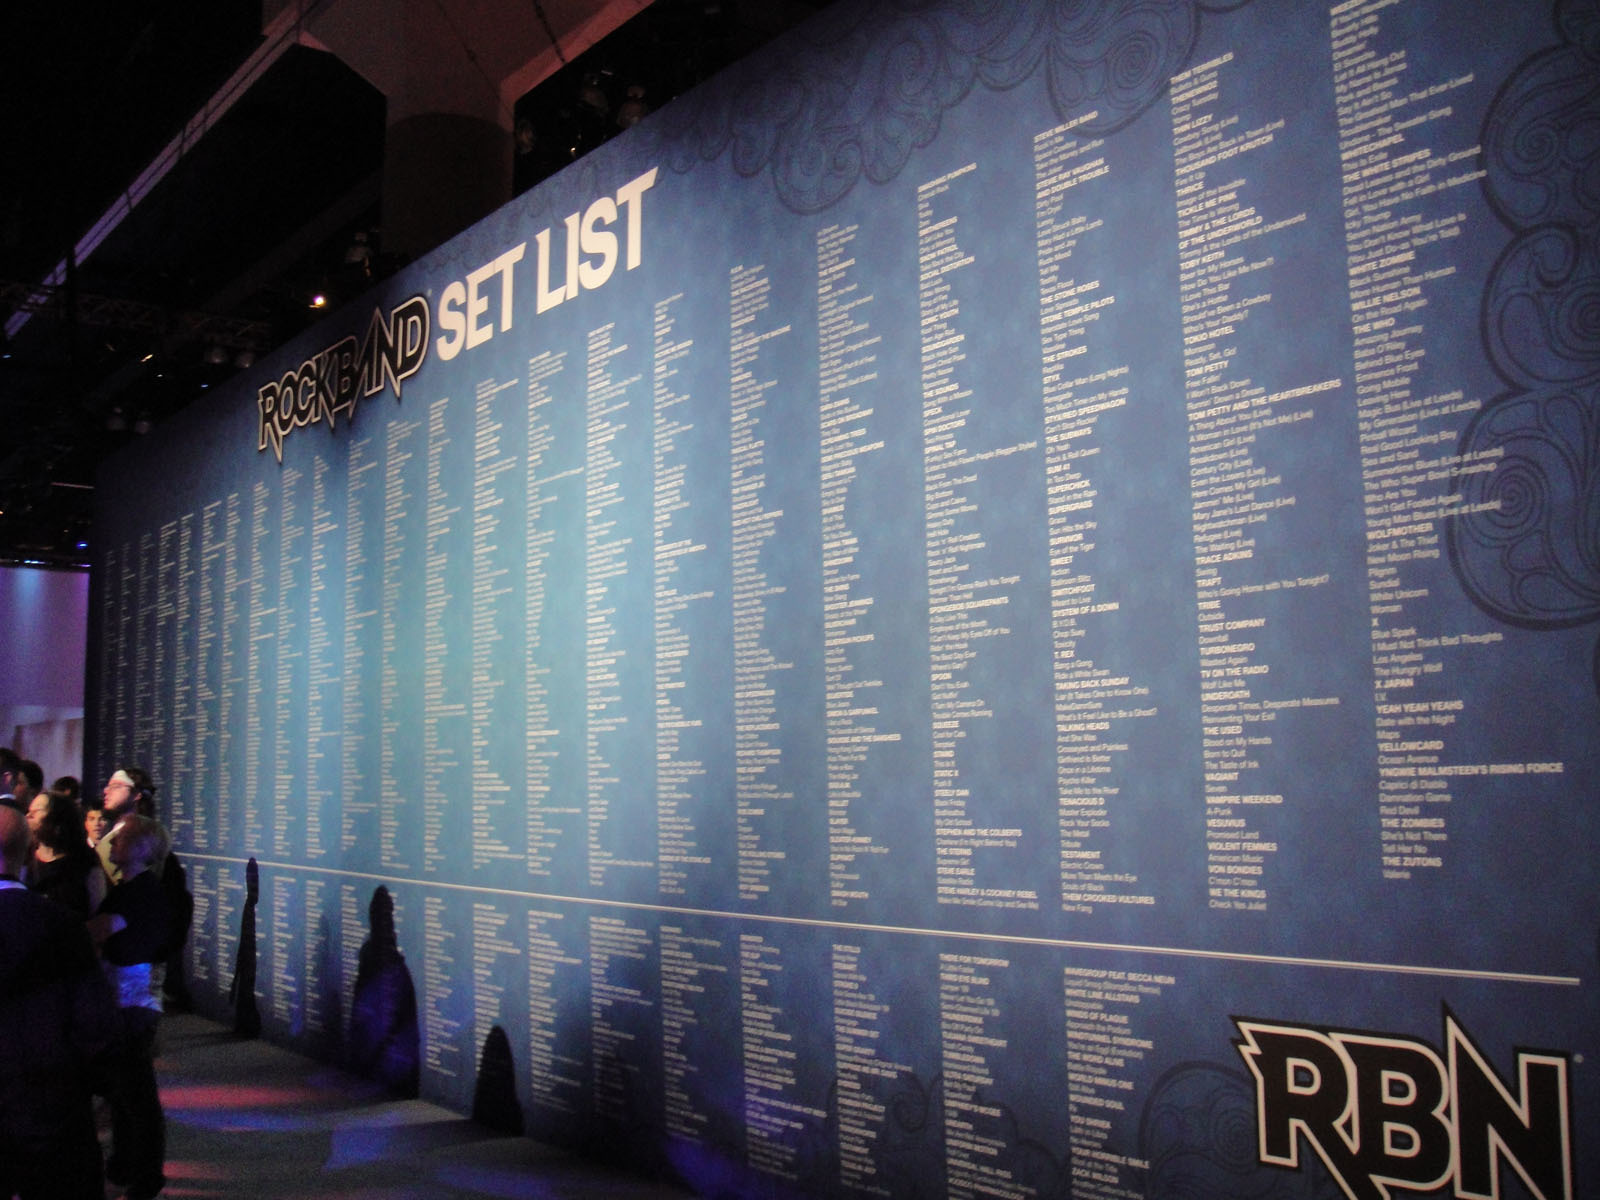 Wall of Rock Band songs E3 2010